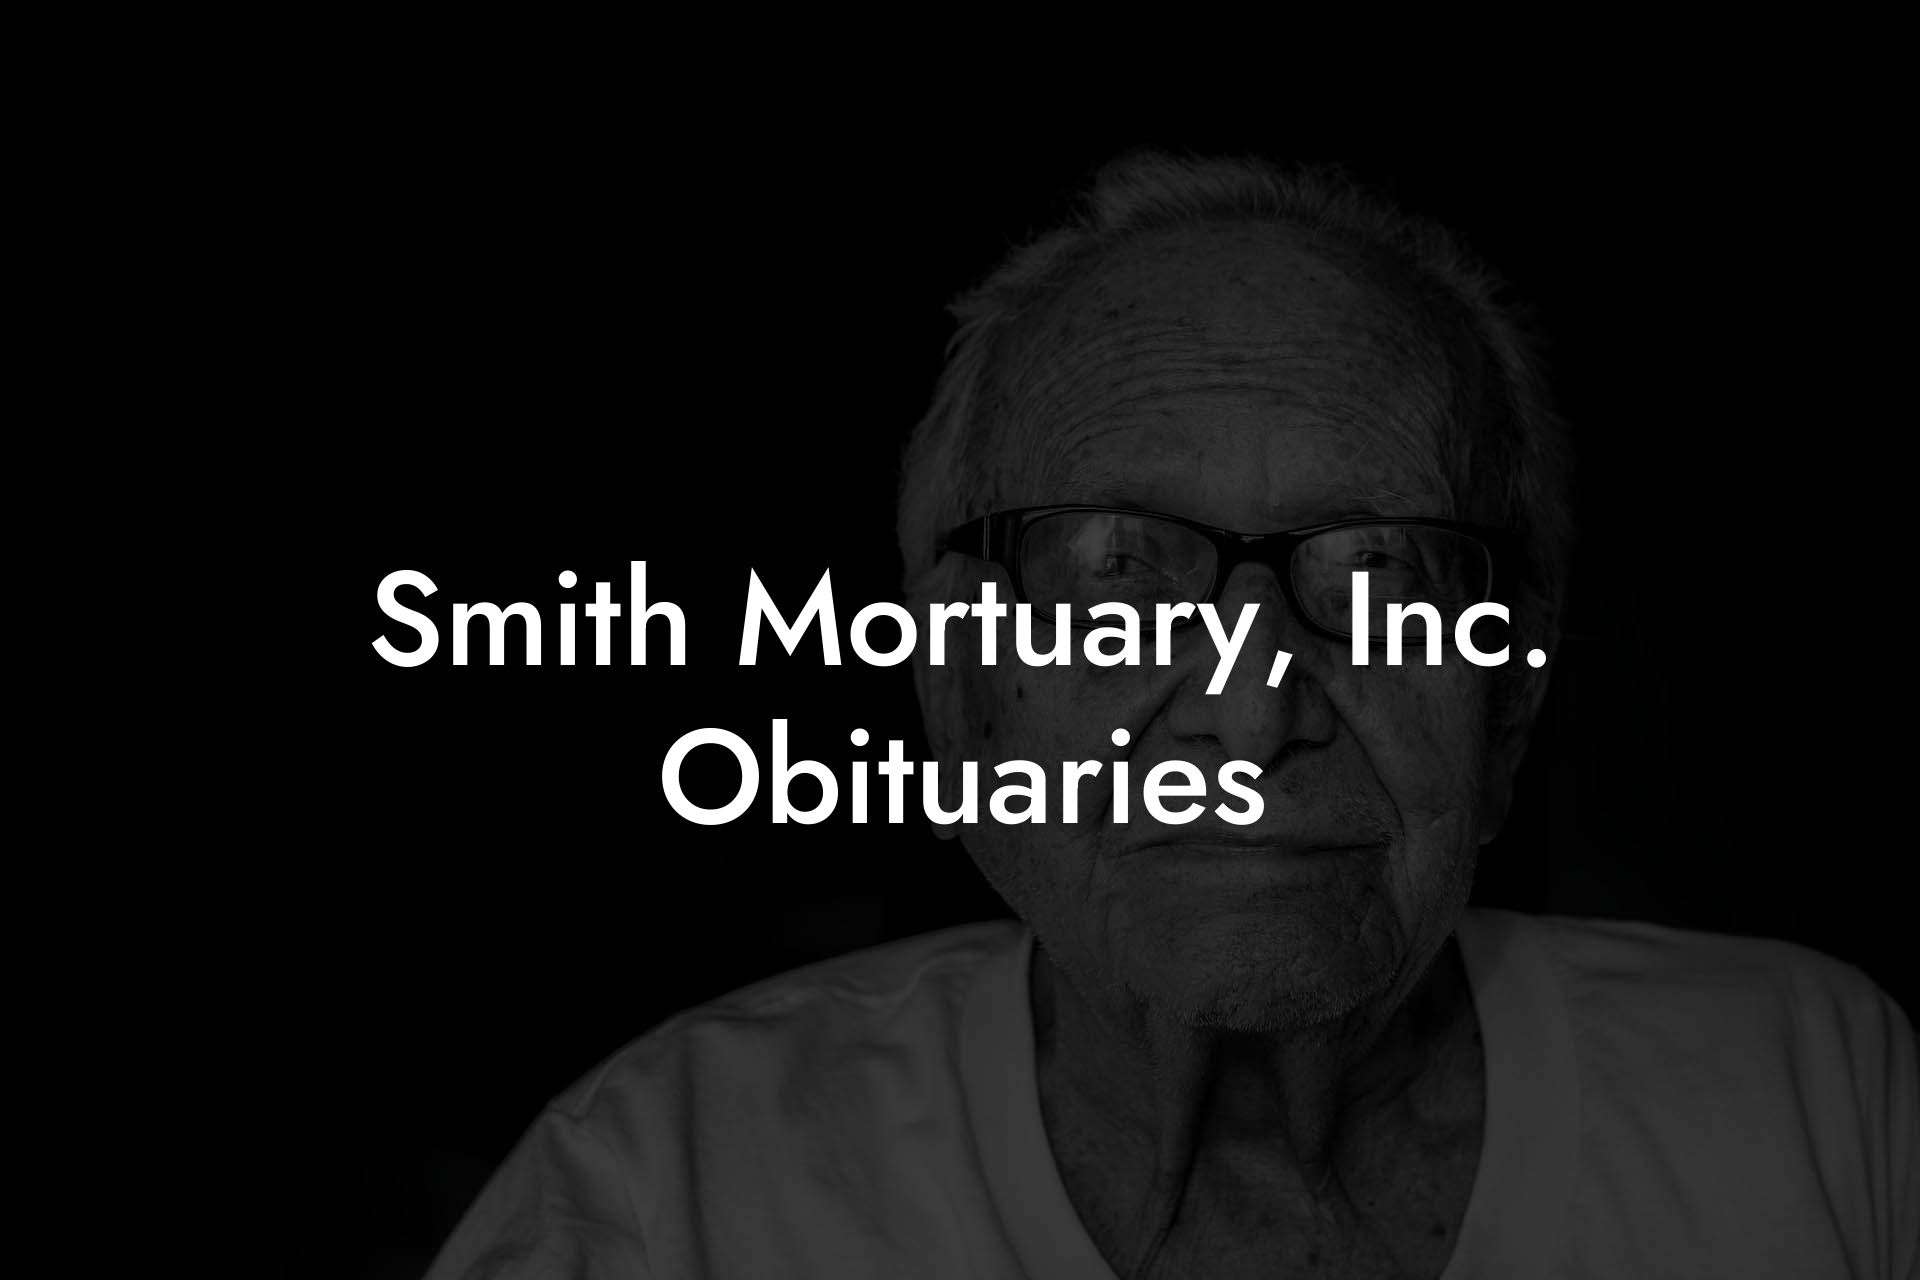 Smith Mortuary, Inc. Obituaries